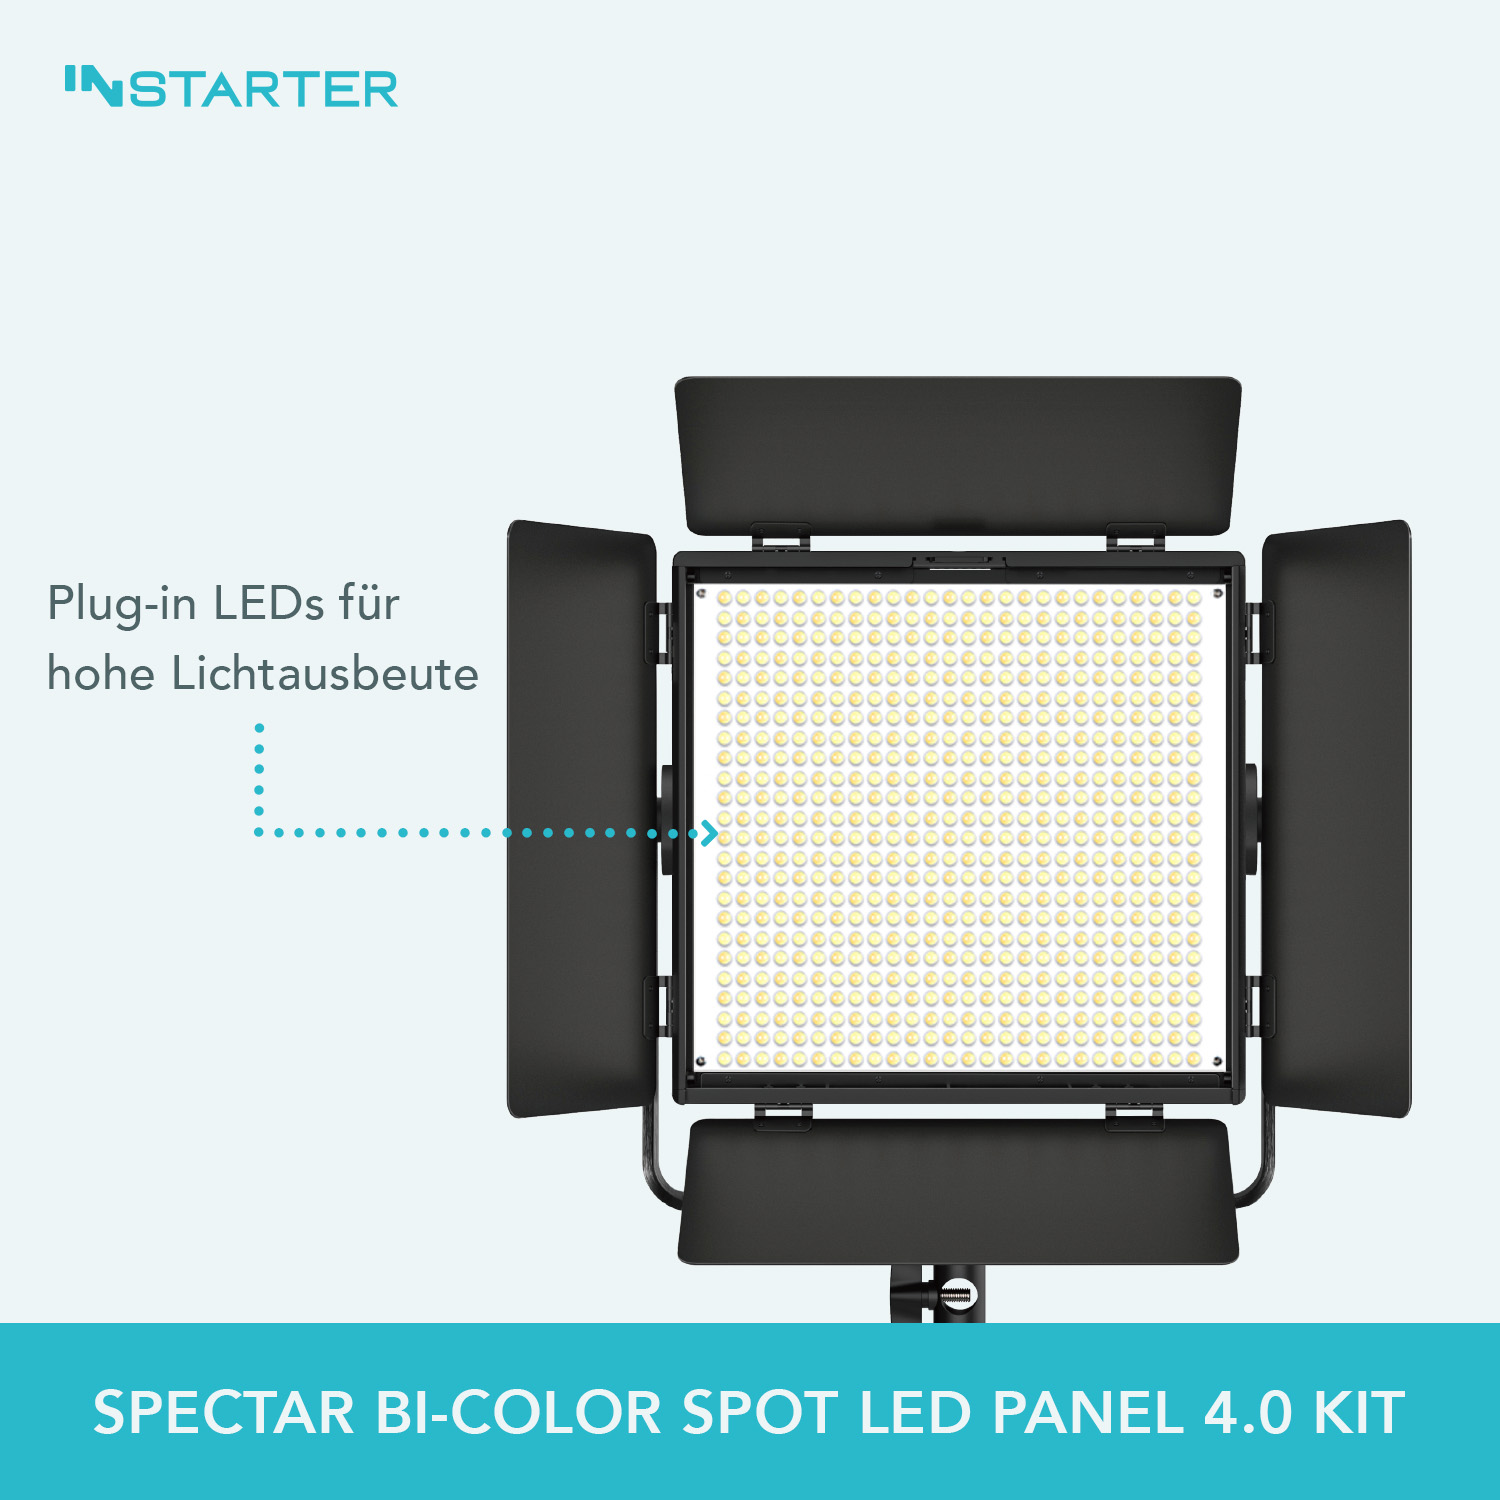 INStarter Spectar Bi-Color Spot LED Panel 4.0 Kit LEDs